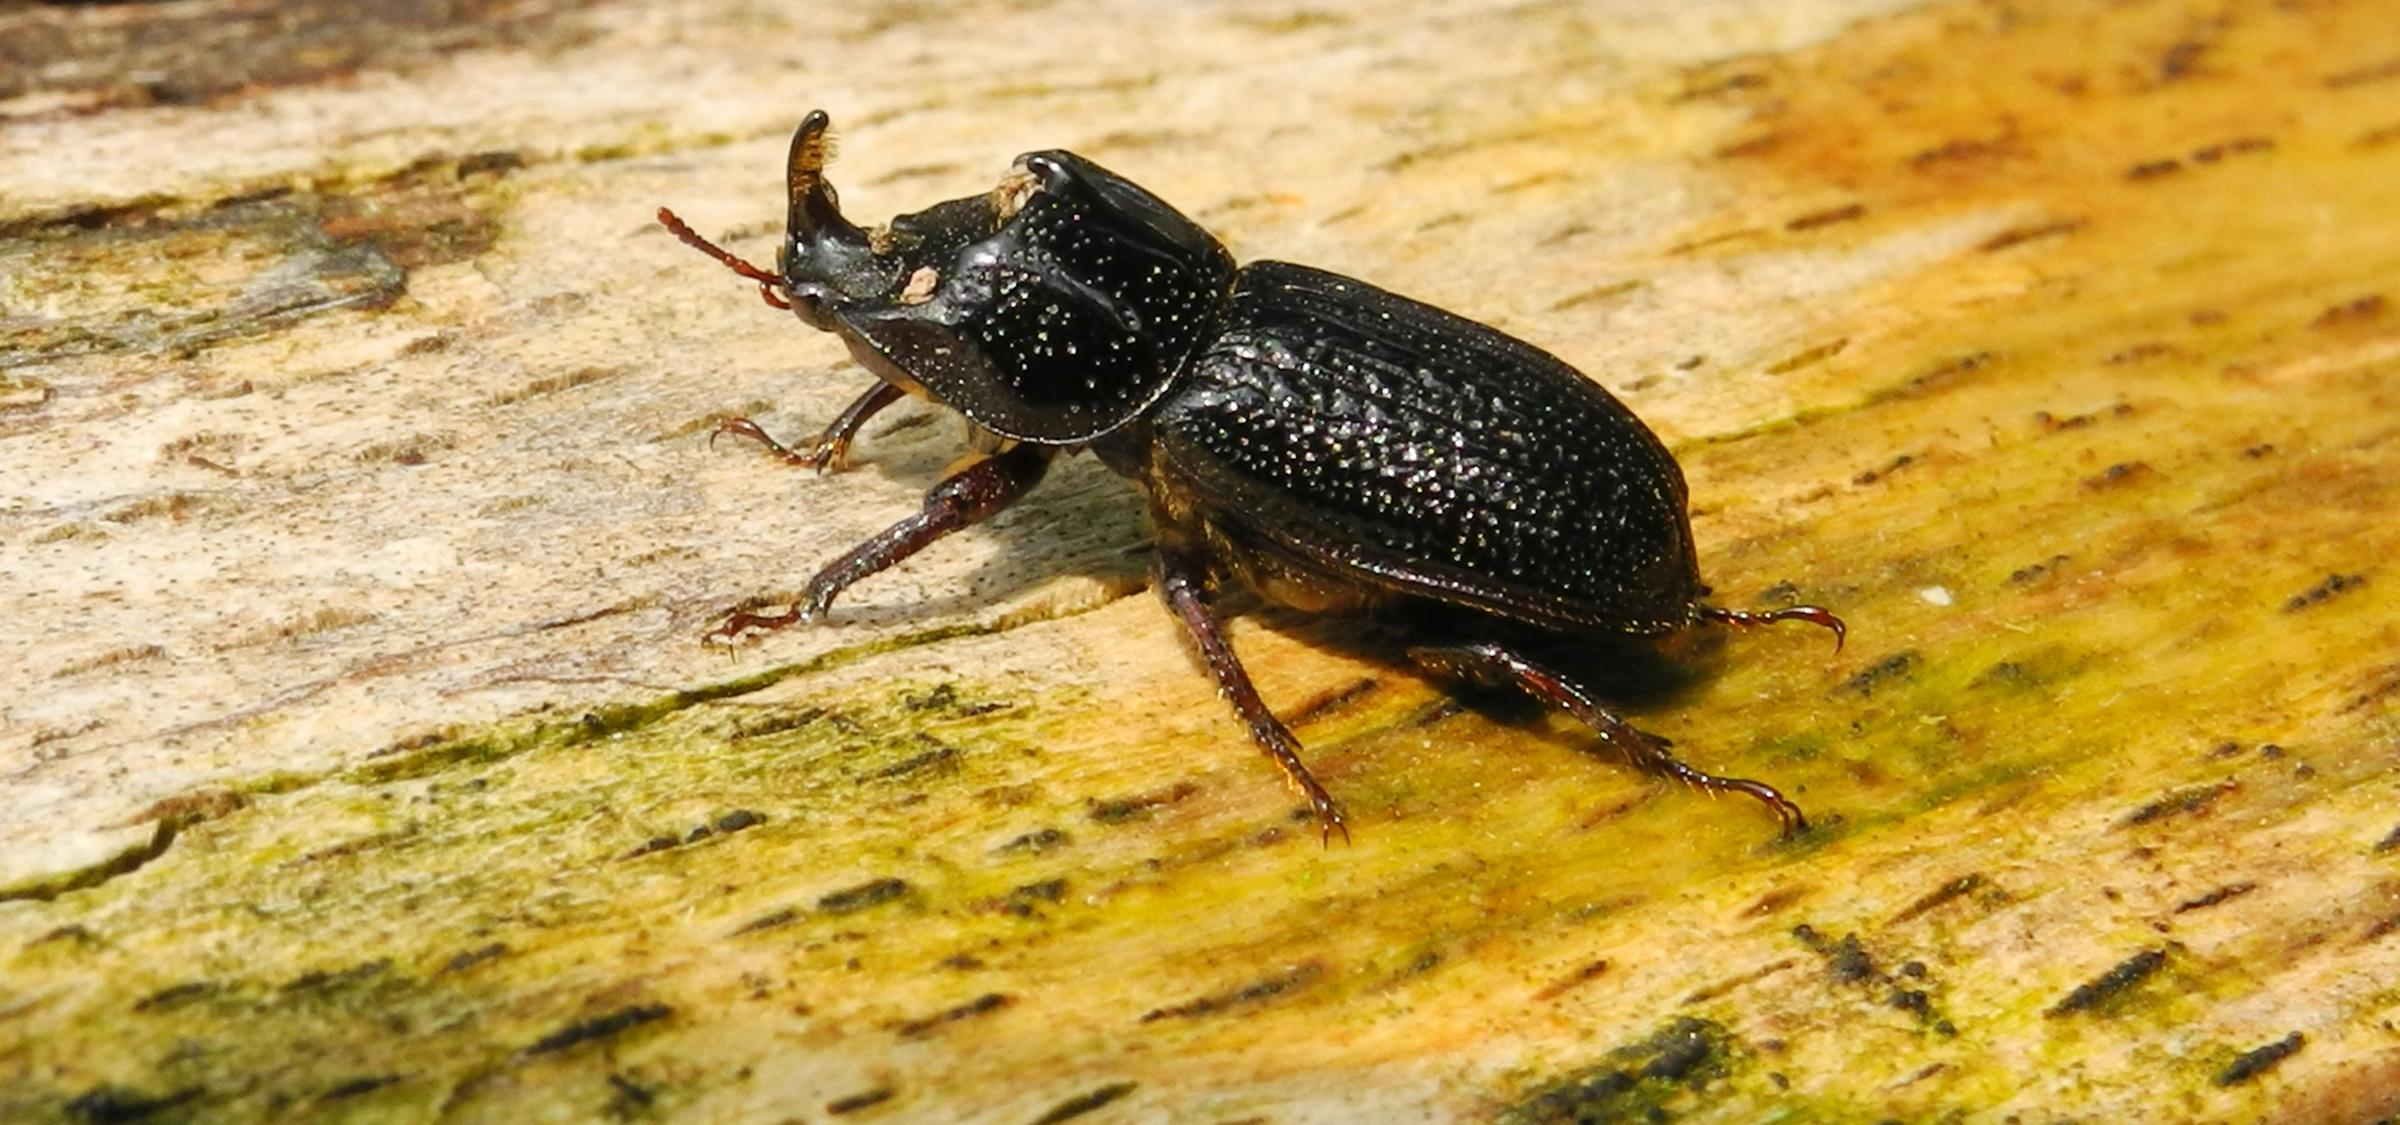 Schwarzbraun gefärbter Käfer mit Horn am Kopf krabbelt über Totholzstamm